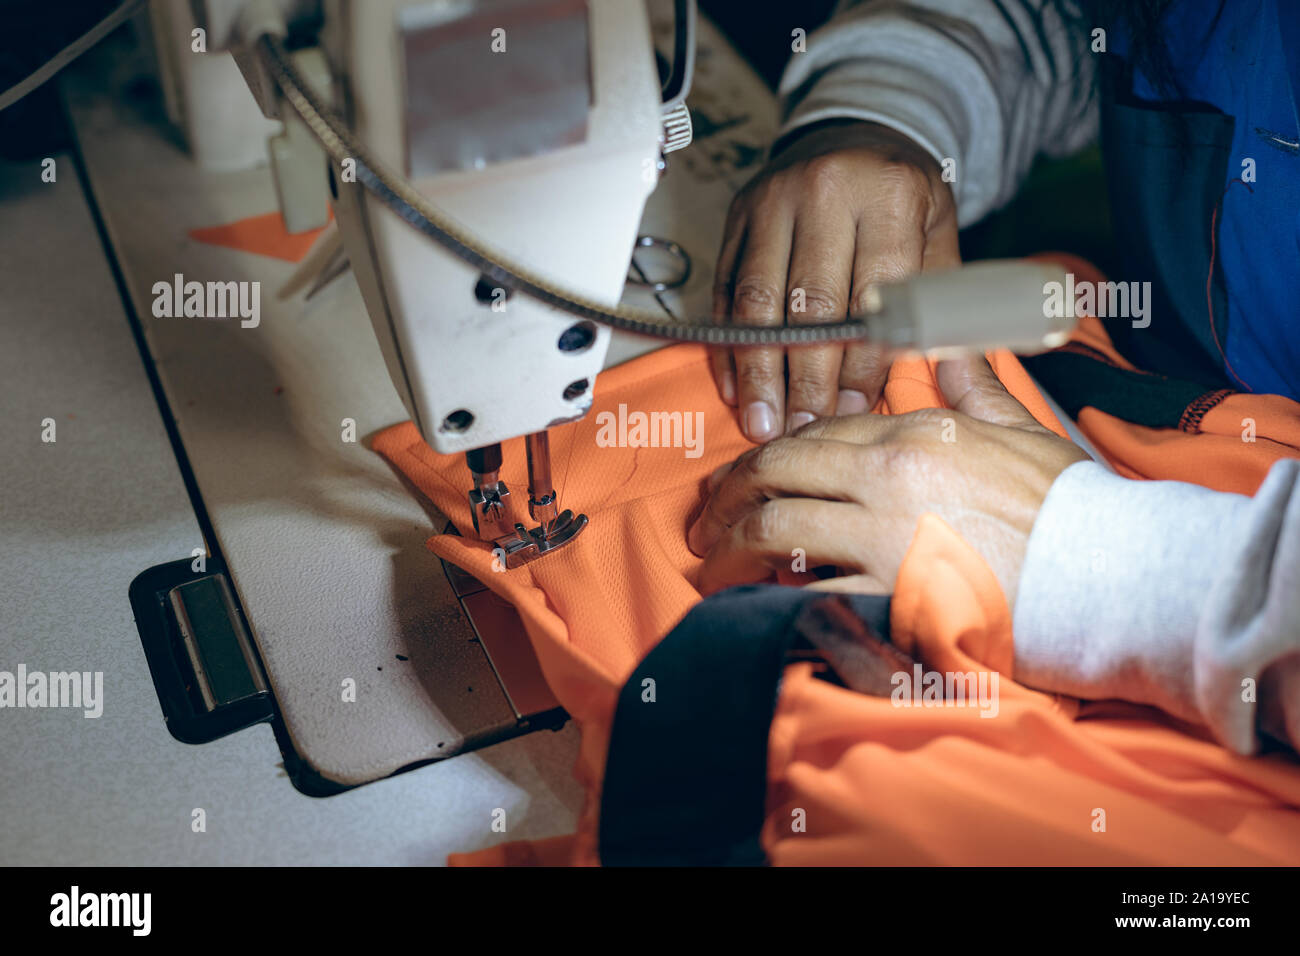 Mains d'une femme à l'aide d'une machine à coudre dans une usine Banque D'Images